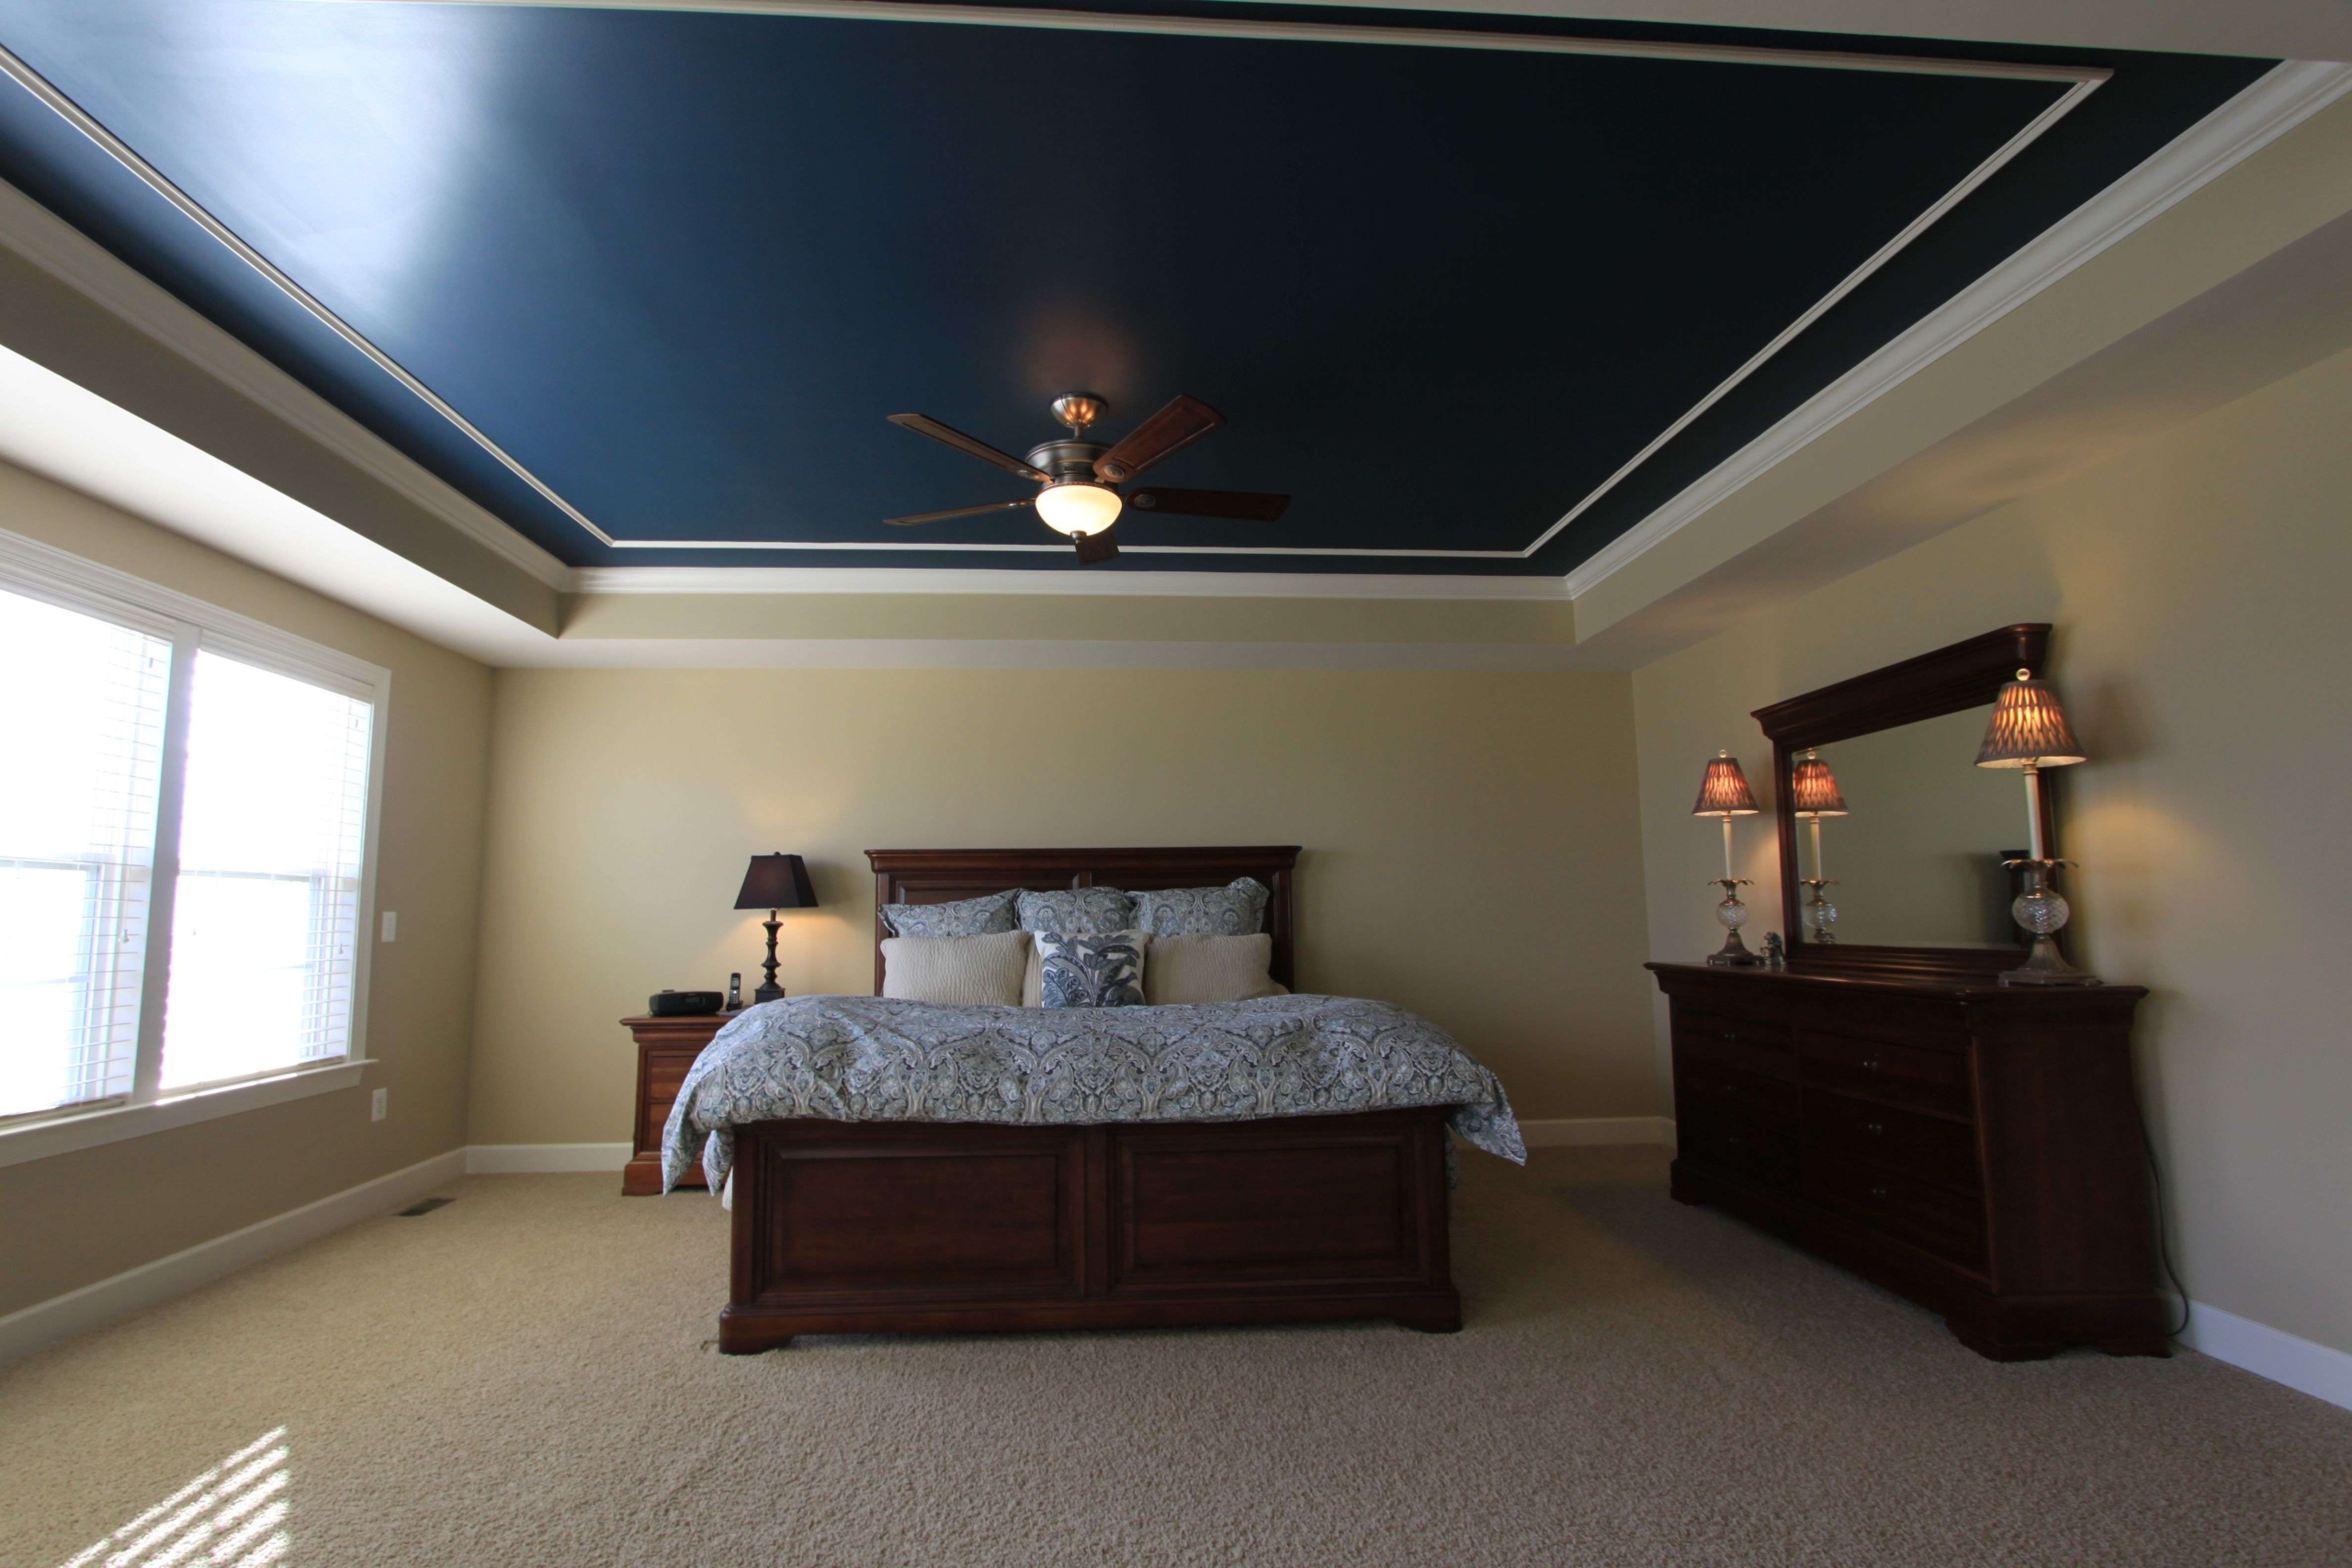 Nội thất phòng ngủ gỗ tần bì tôn lên vẻ đẹp tự nhiên và đầy cuốn hút